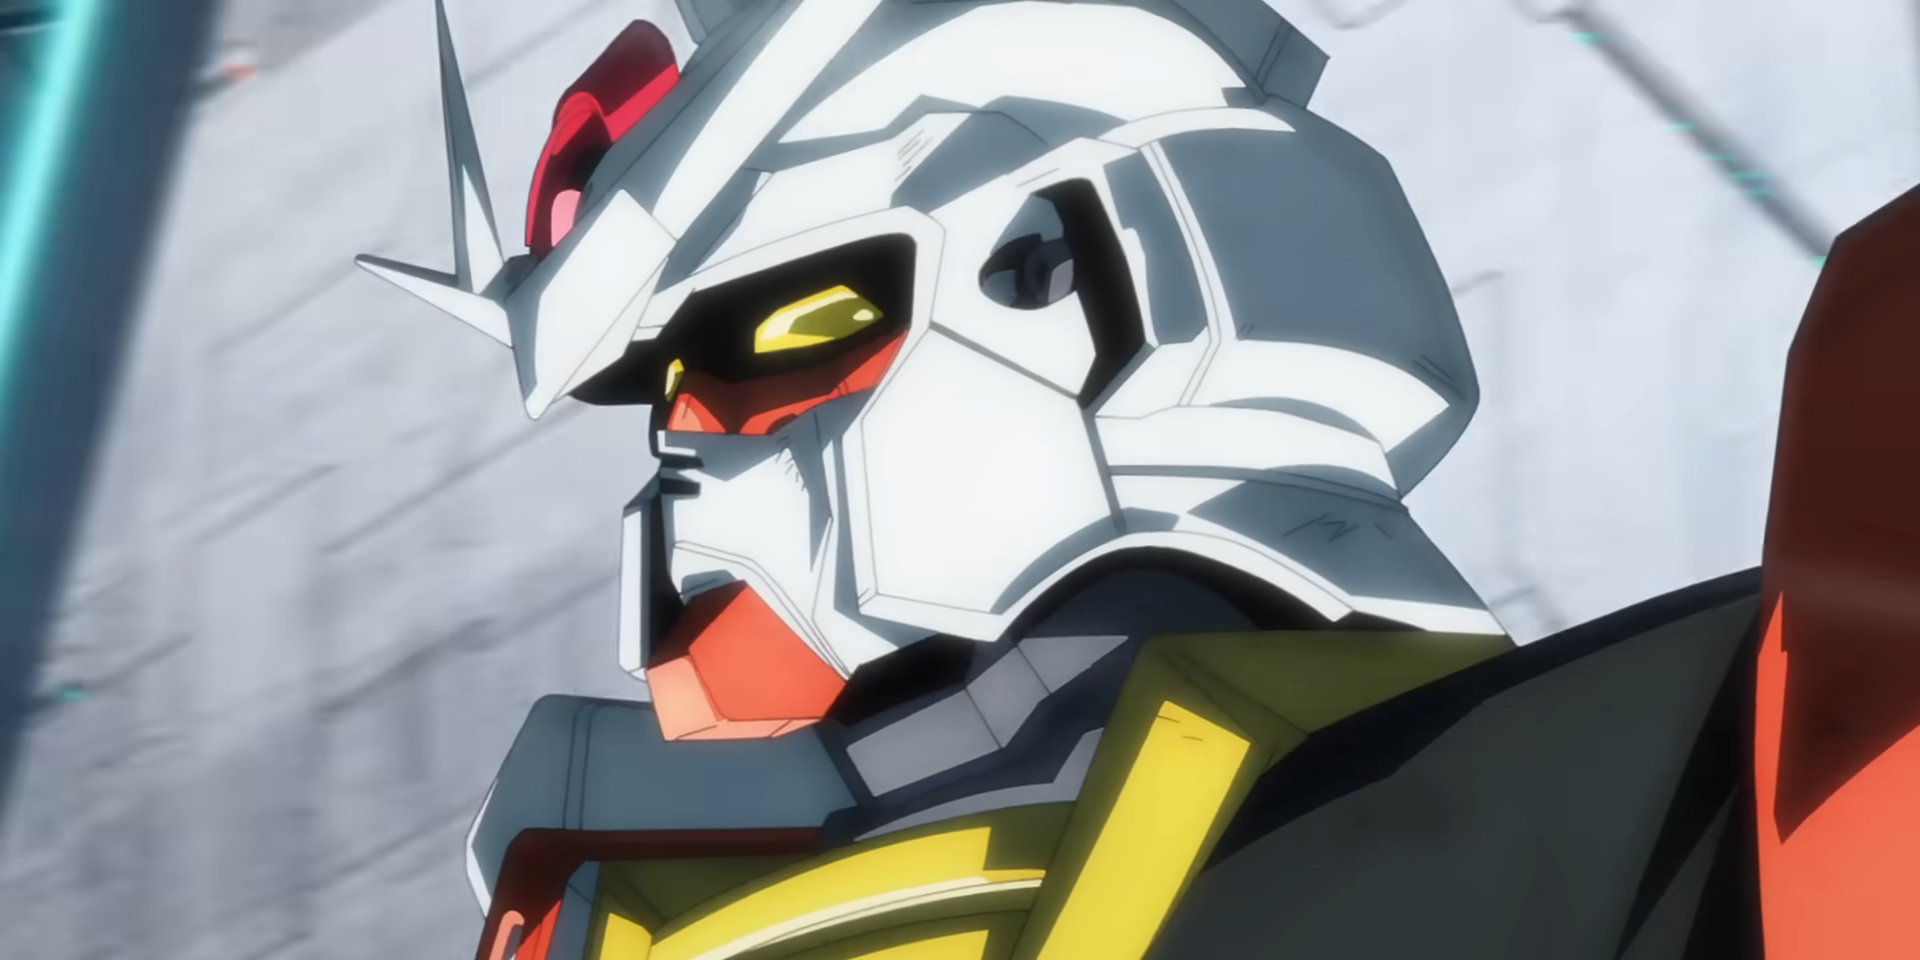 Bandai Megasize 1/48 Unicorn Gundam Anime Style Painting - Etsy